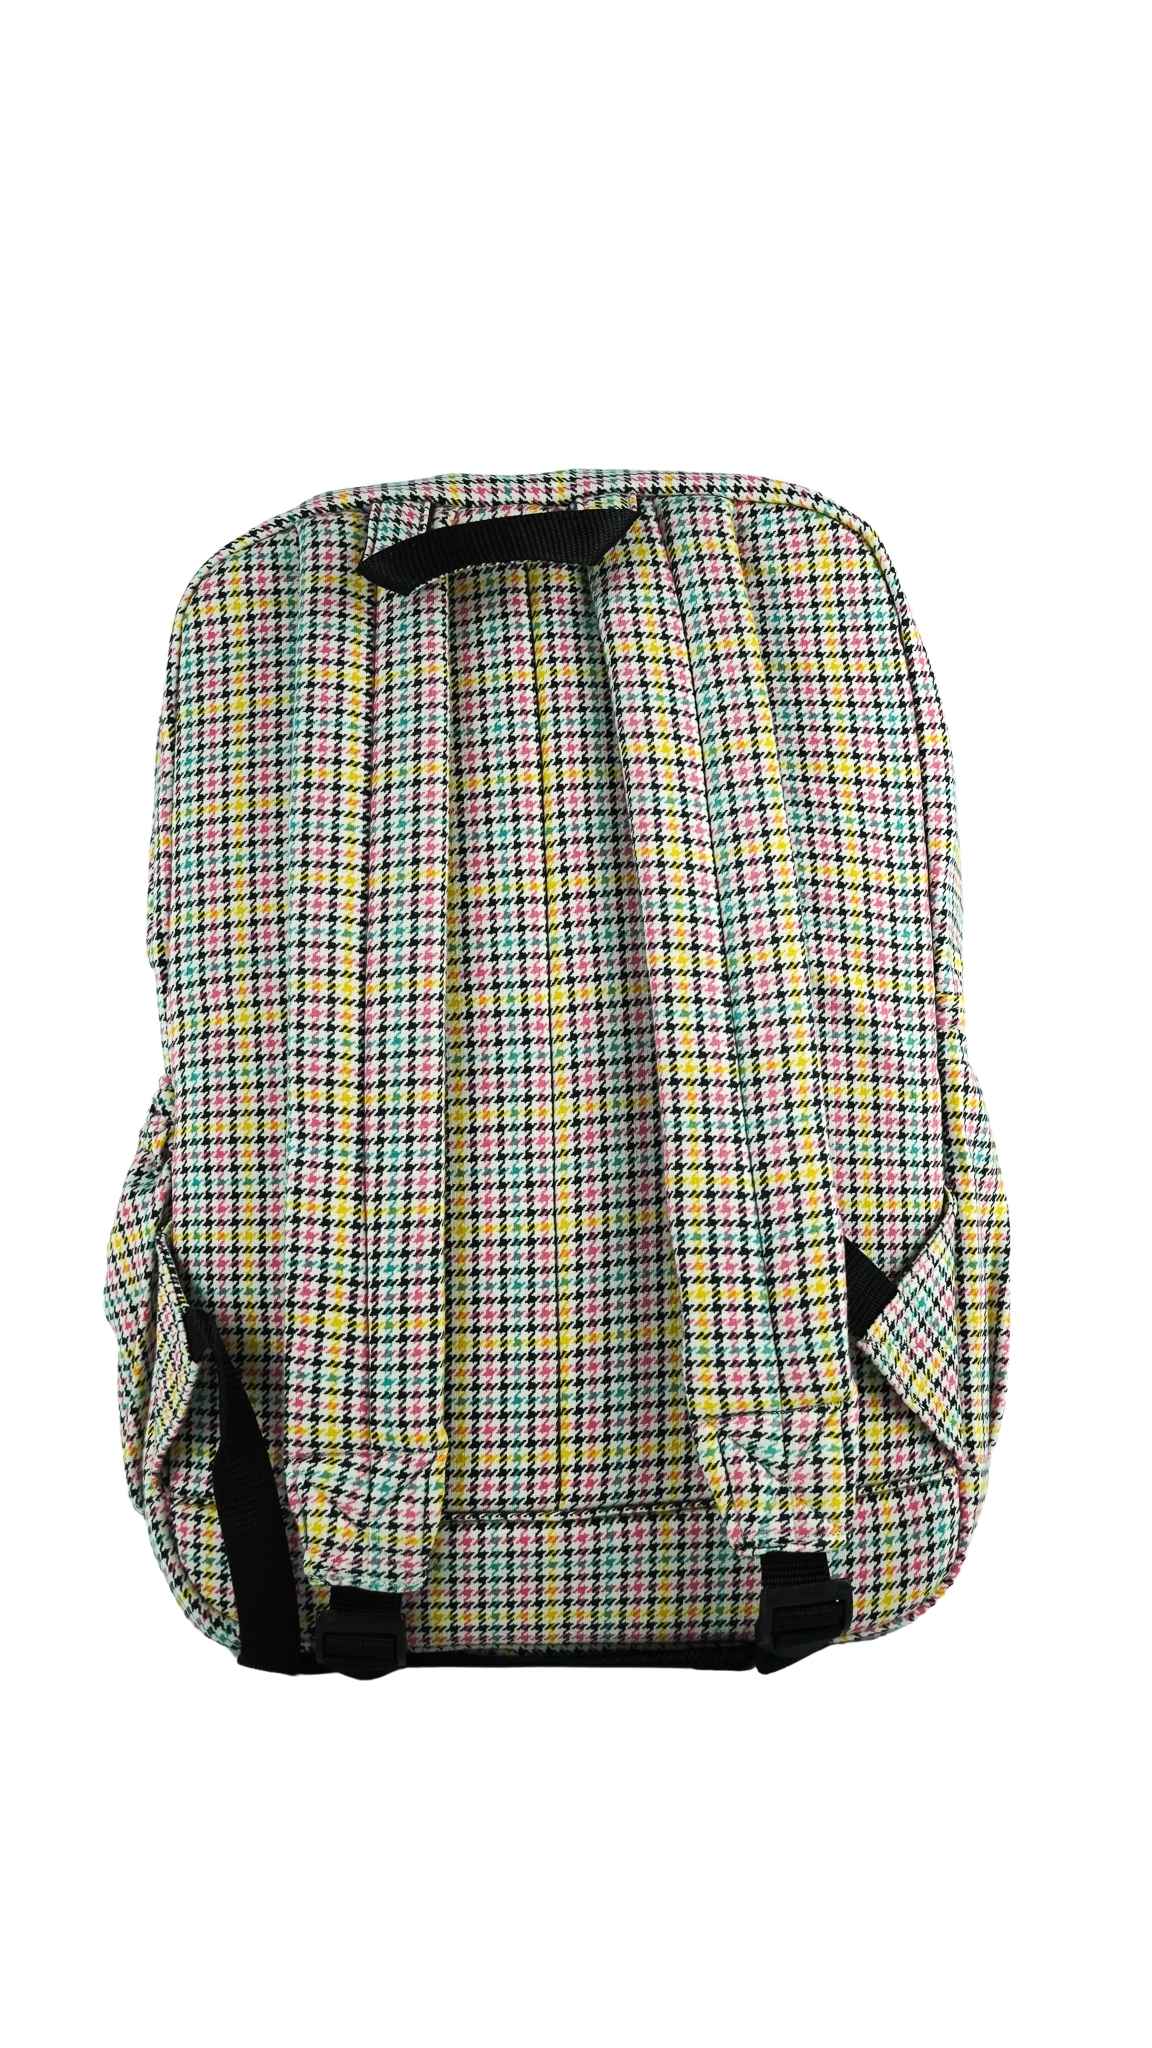 Backpack Checkered I